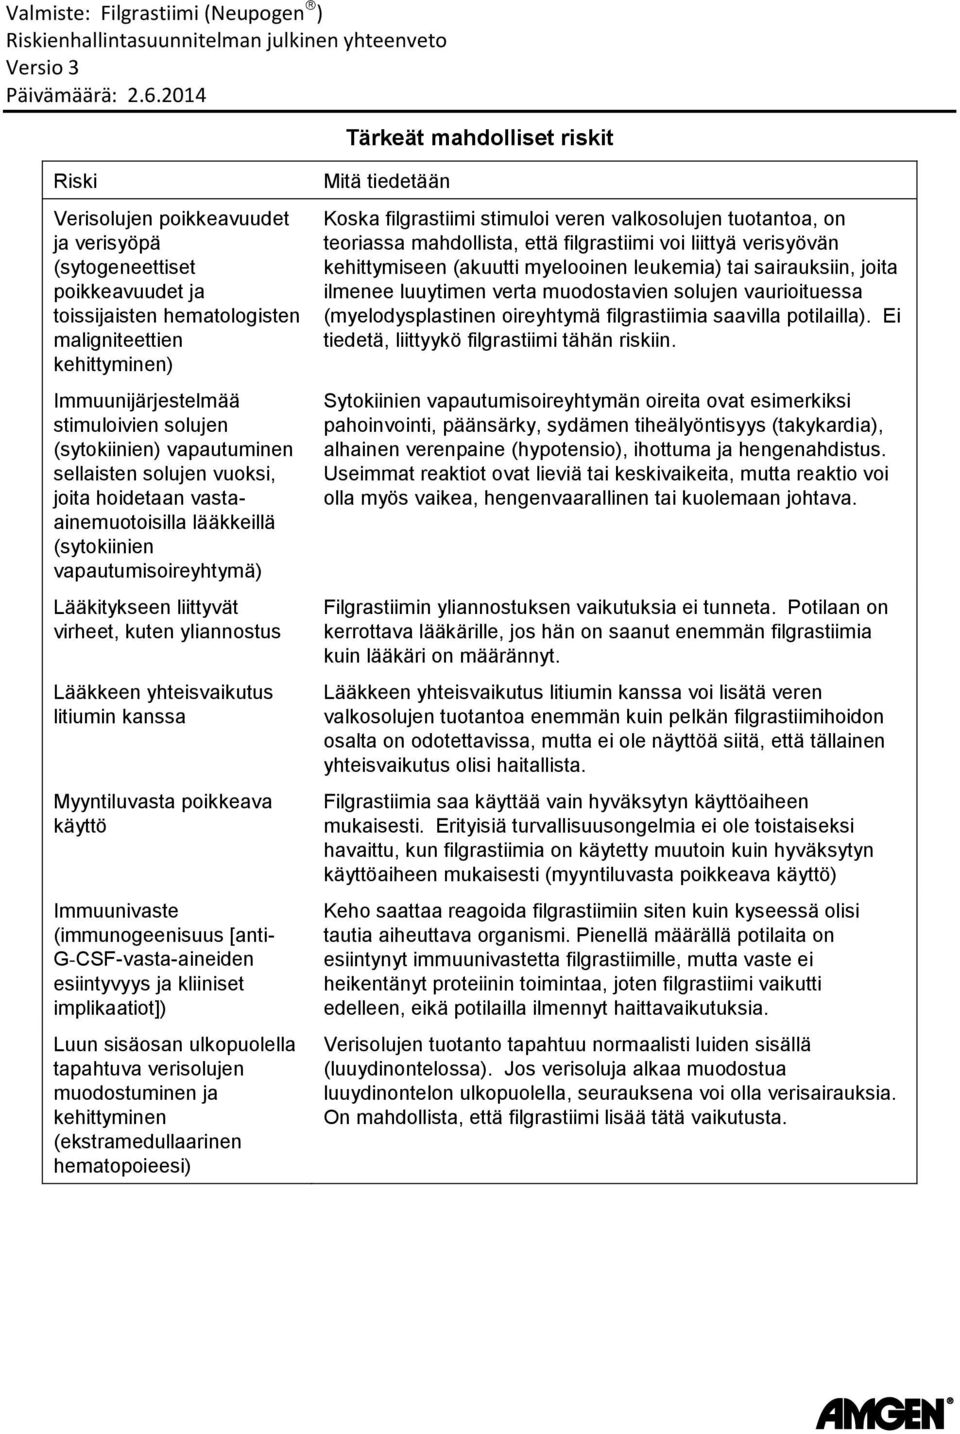 Lääkkeen yhteisvaikutus litiumin kanssa Myyntiluvasta poikkeava käyttö Immuunivaste (immunogeenisuus [anti- G-CSF-vasta-aineiden esiintyvyys ja kliiniset implikaatiot]) Luun sisäosan ulkopuolella